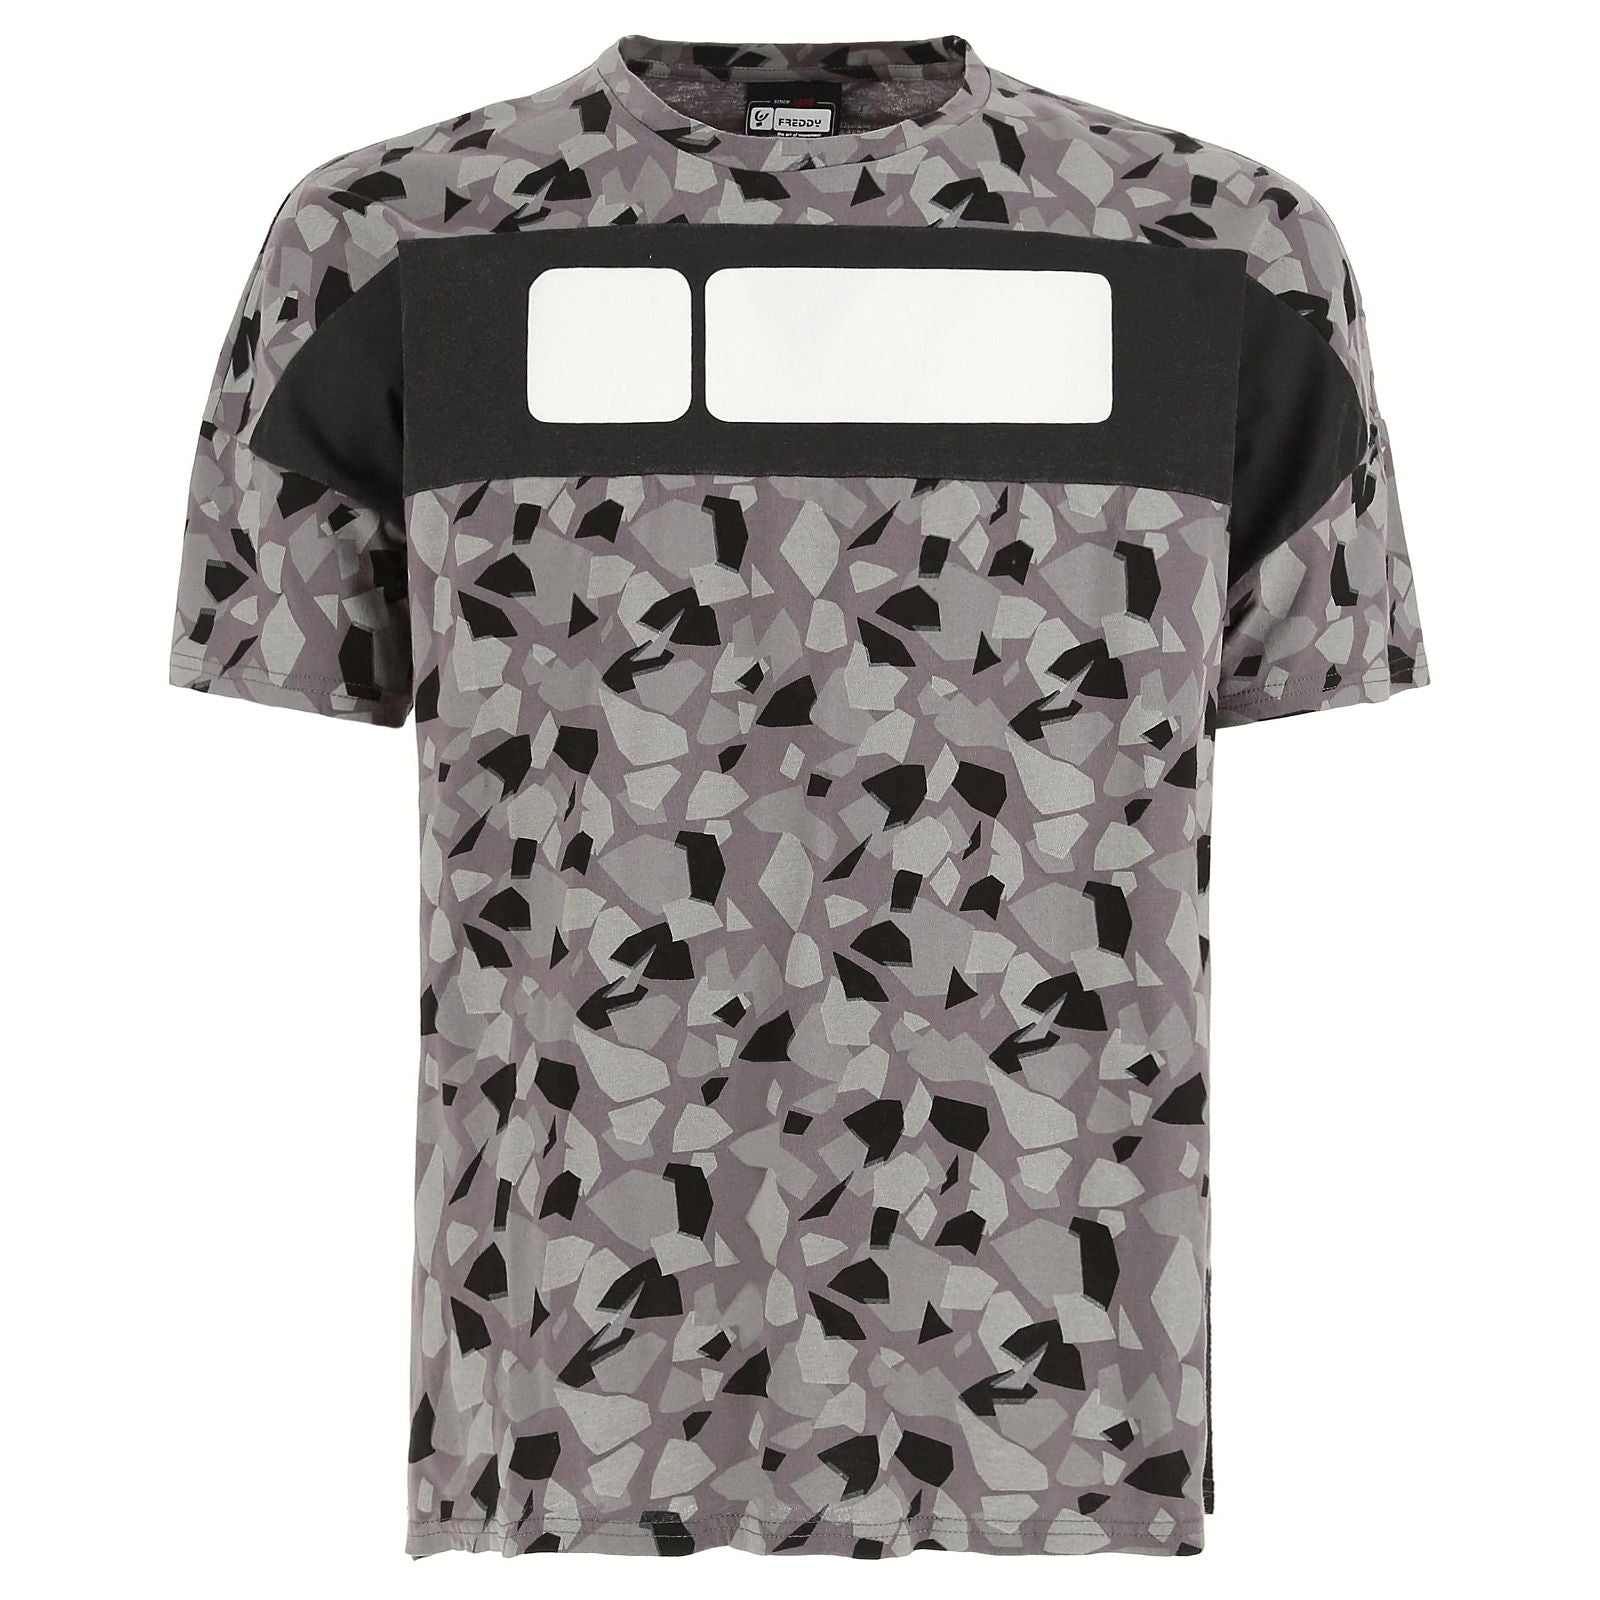 Men's T shirt - Geometric 1